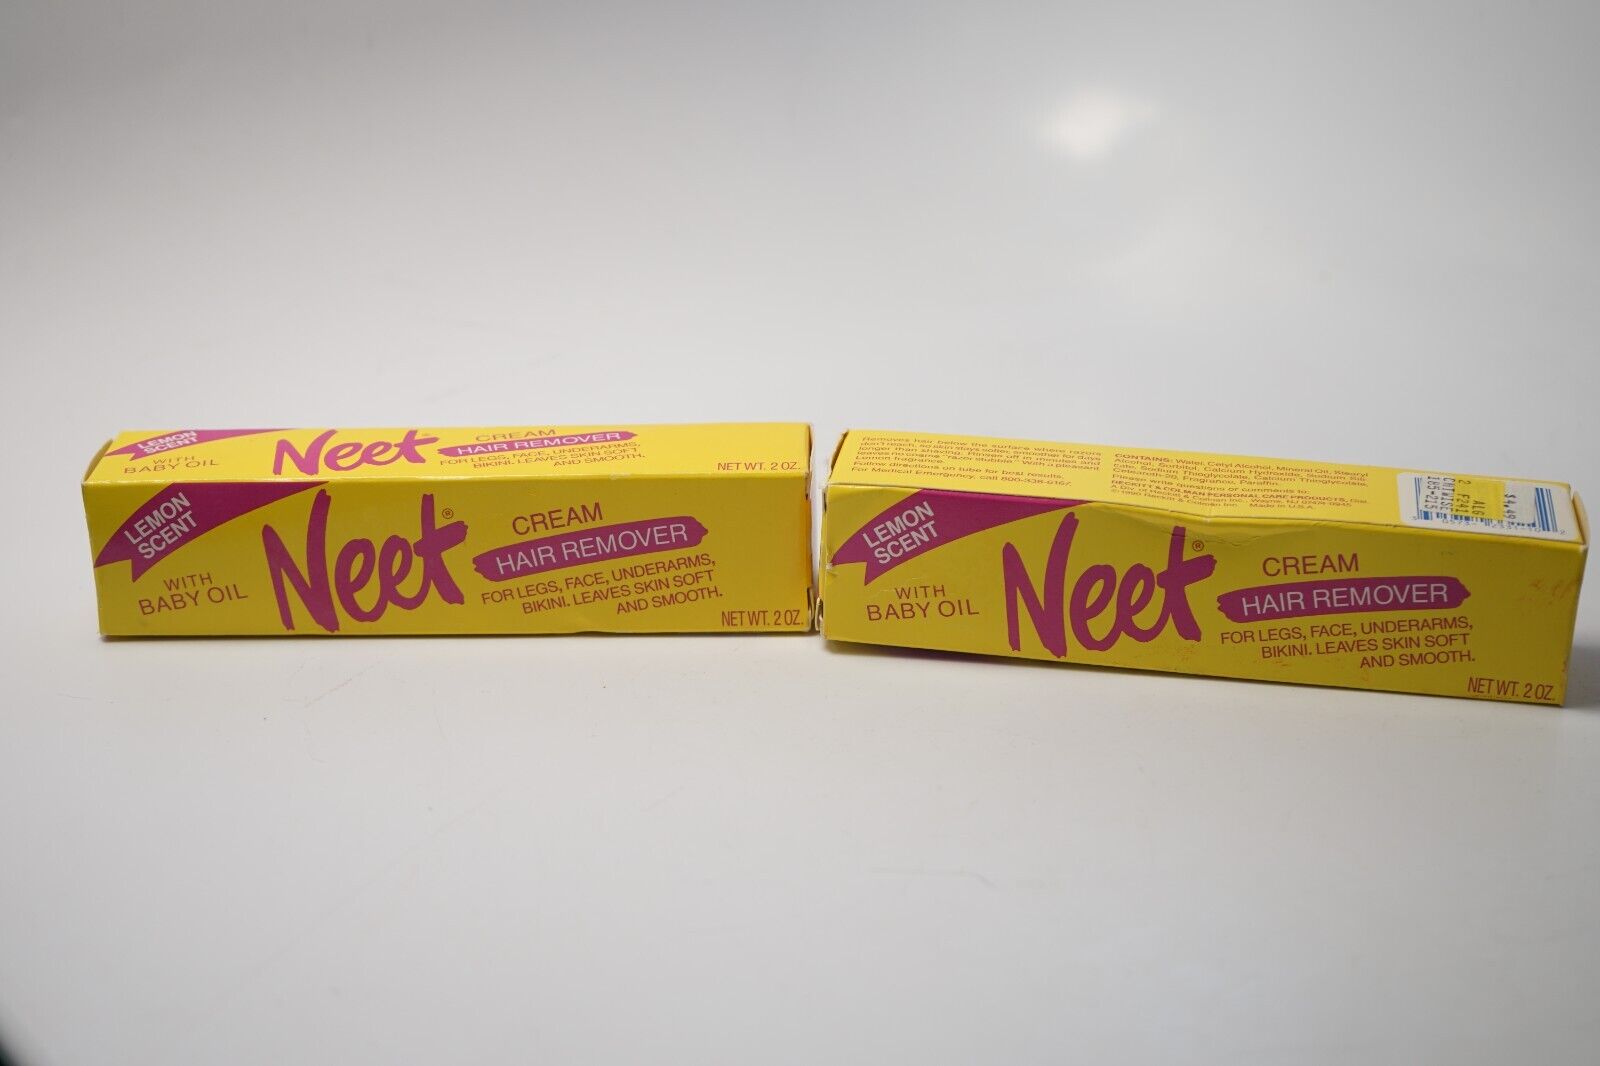 Vtg 1990 Neet Cream Hair Remover Lemon Scent Drugstore Movie Prop Tube Bathroom